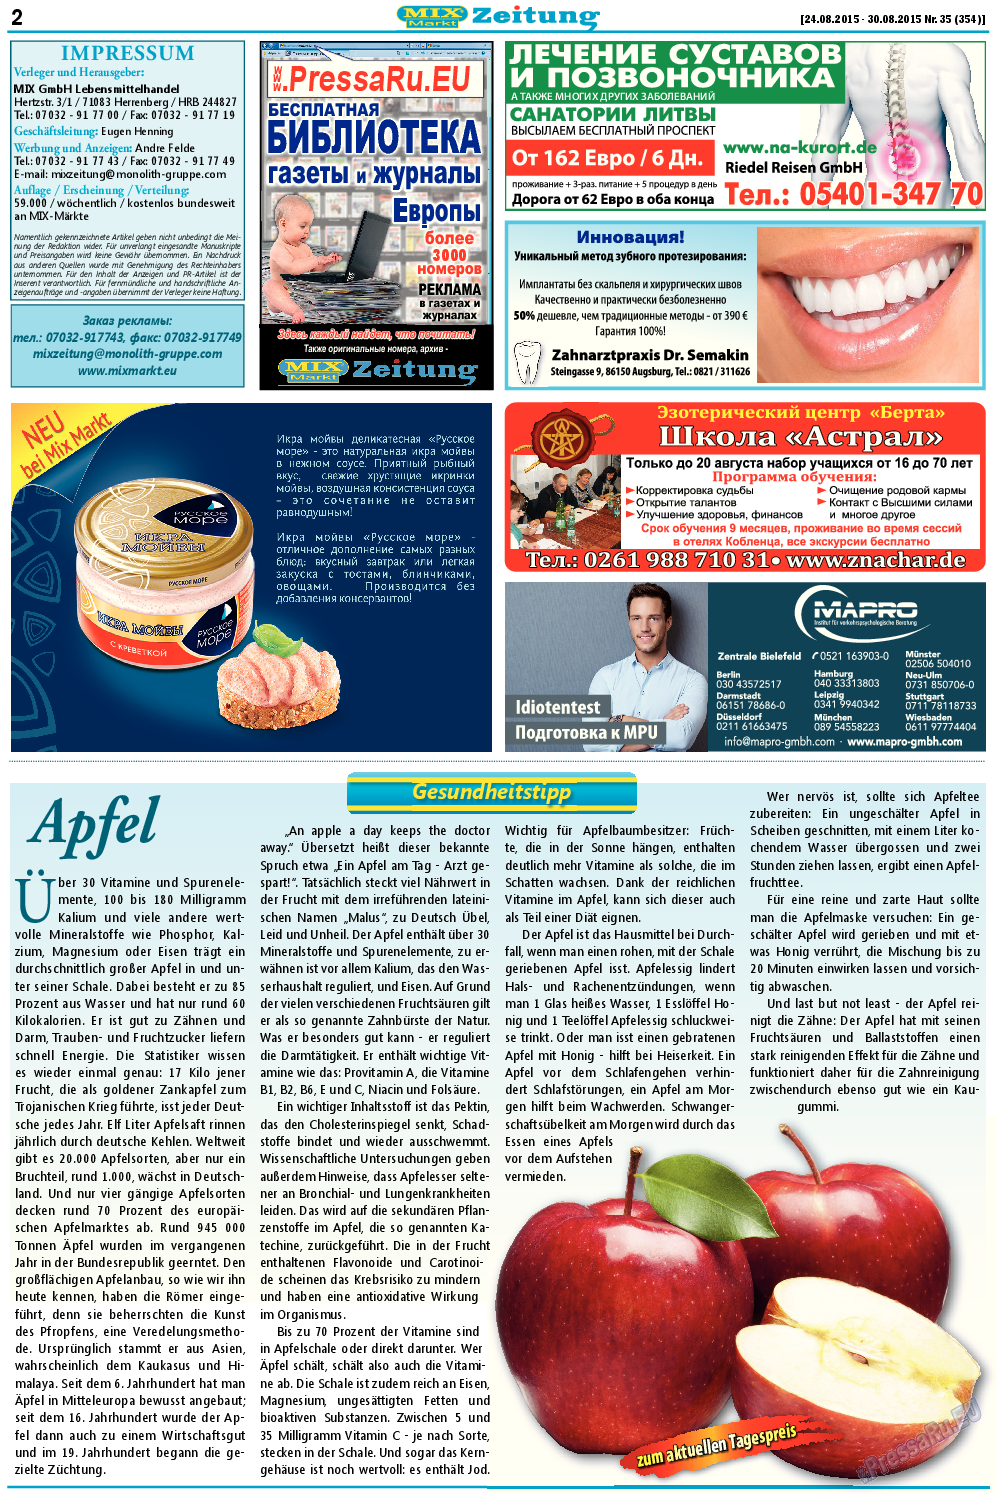 MIX-Markt Zeitung, газета. 2015 №35 стр.2